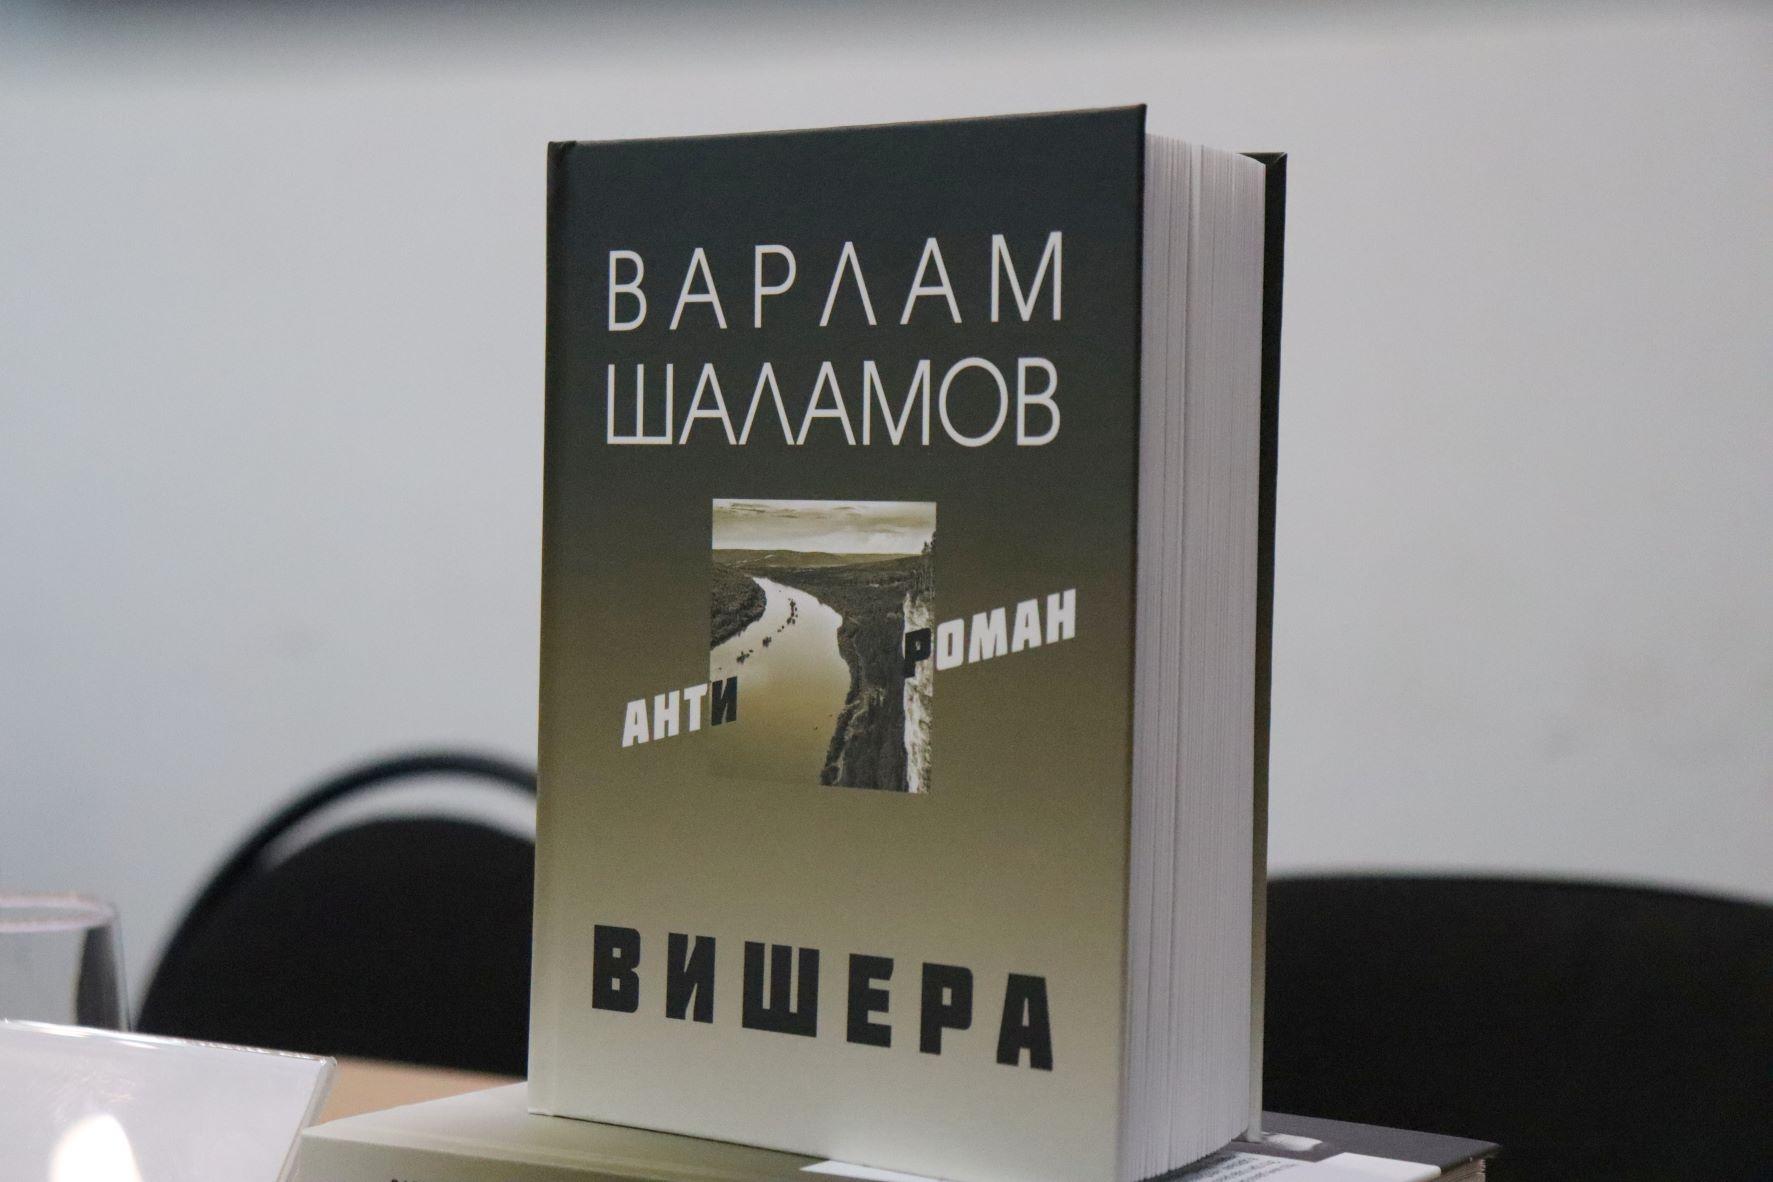 Павел Миков принял участие в пресс-конференции, на которой было презентовано новое издание книги Варлама Шаламова «Вишерский антироман»